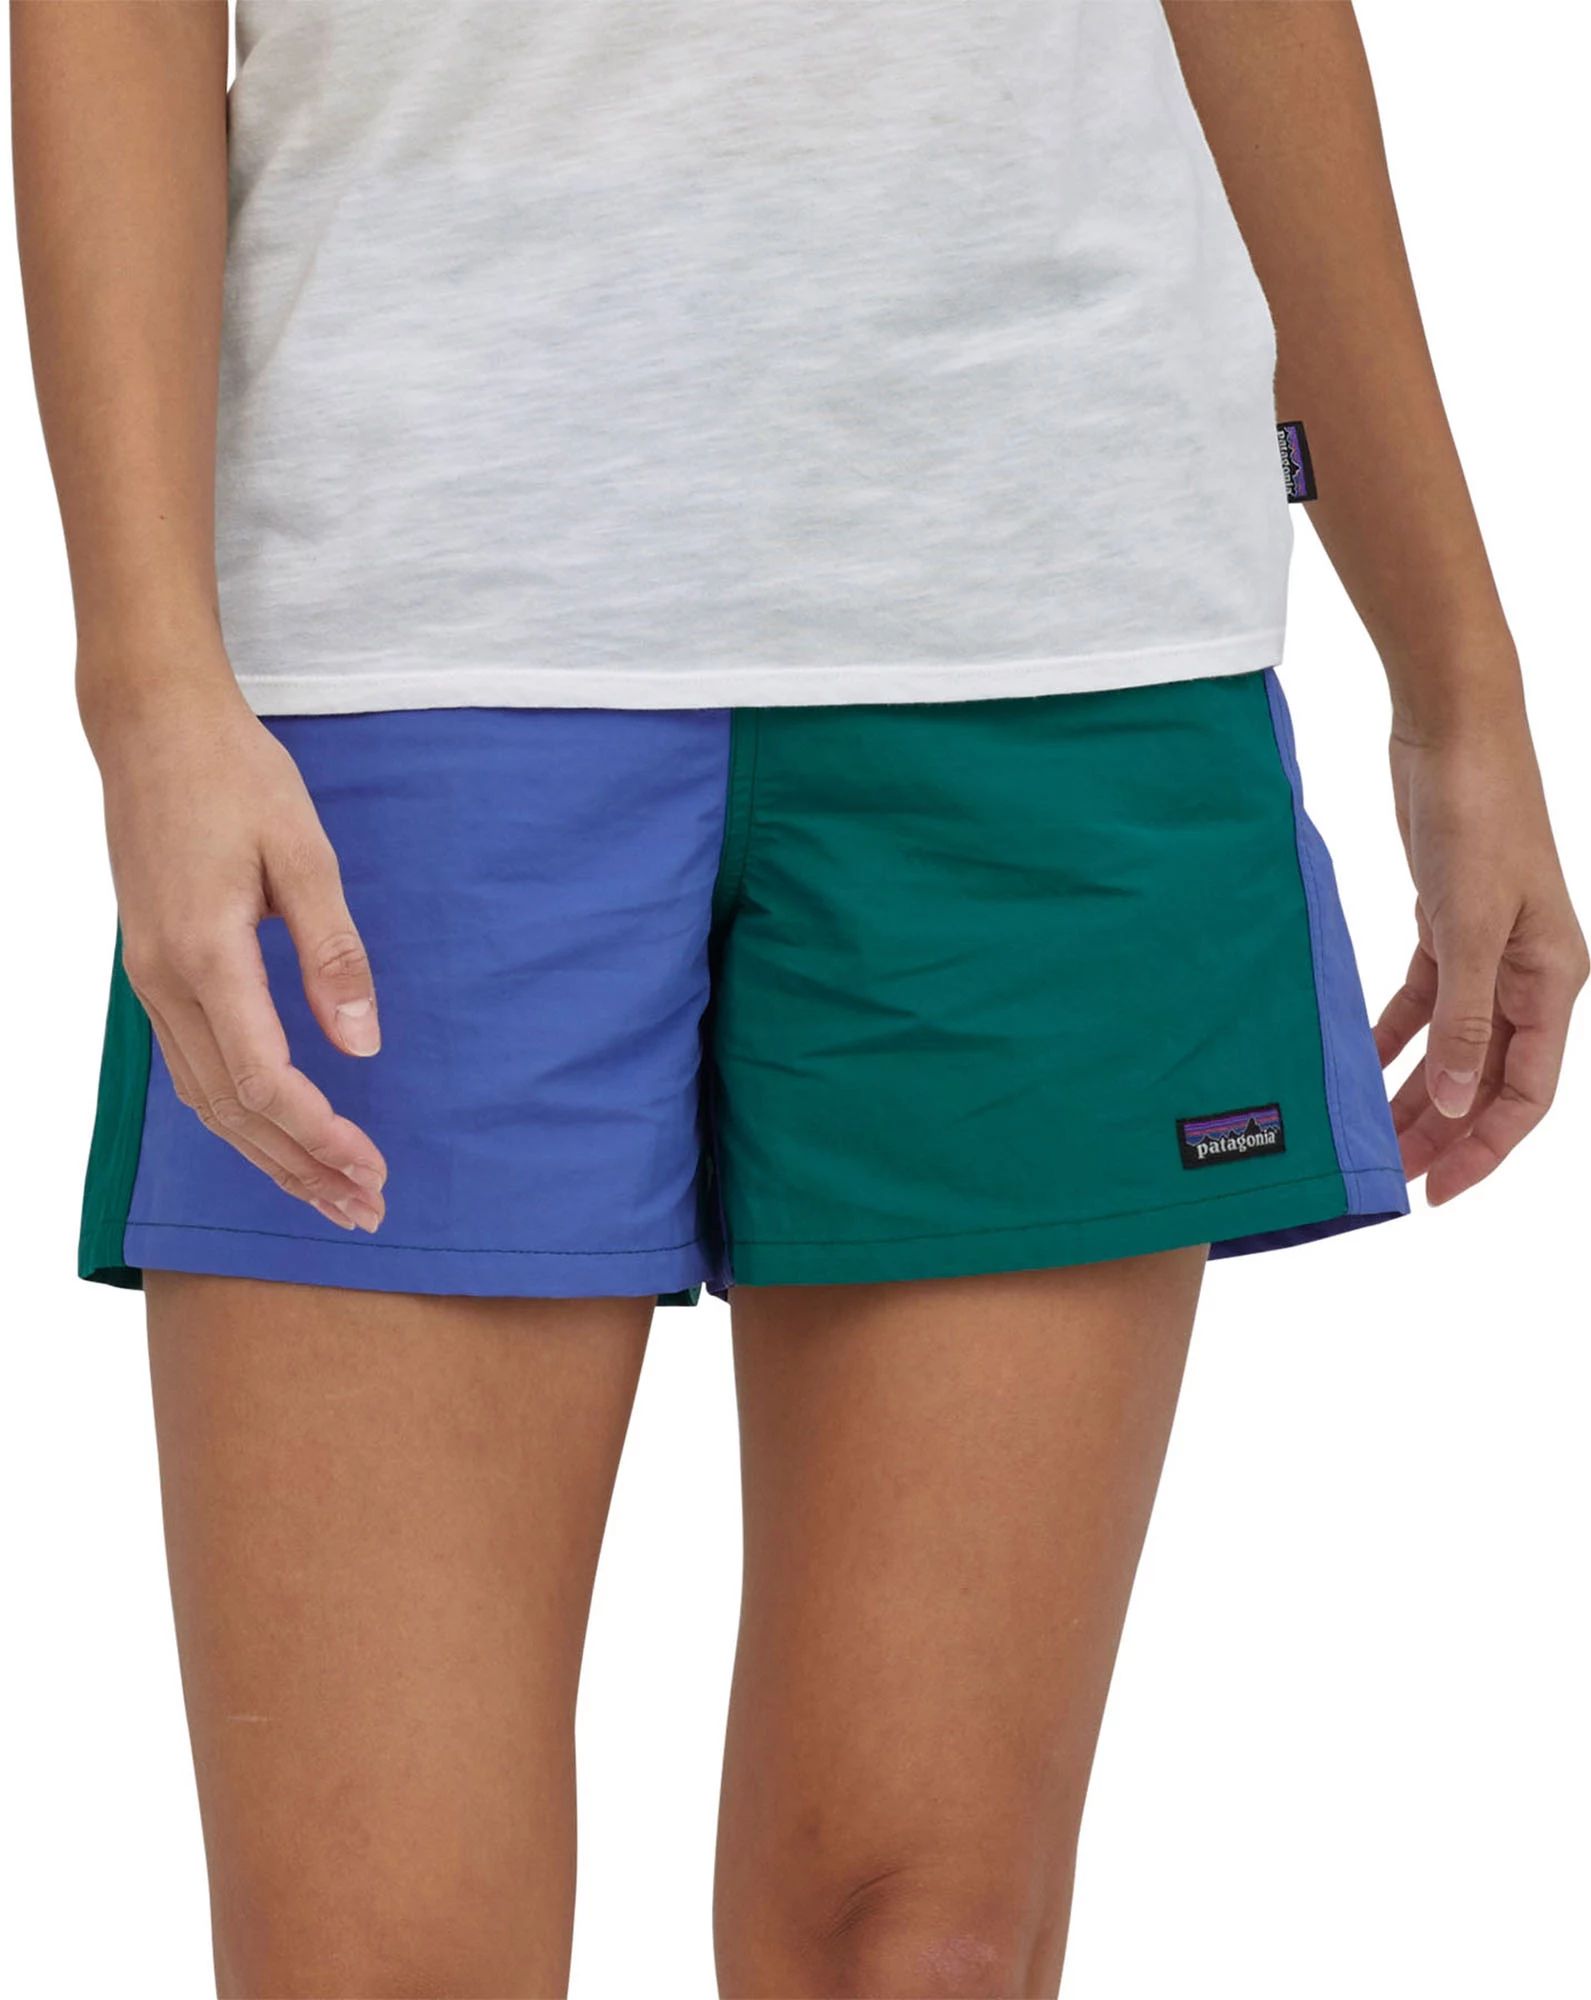 Patagonia Women's 5” Baggies Shorts, Medium, Harlequin/Borealis Green | Dick's Sporting Goods